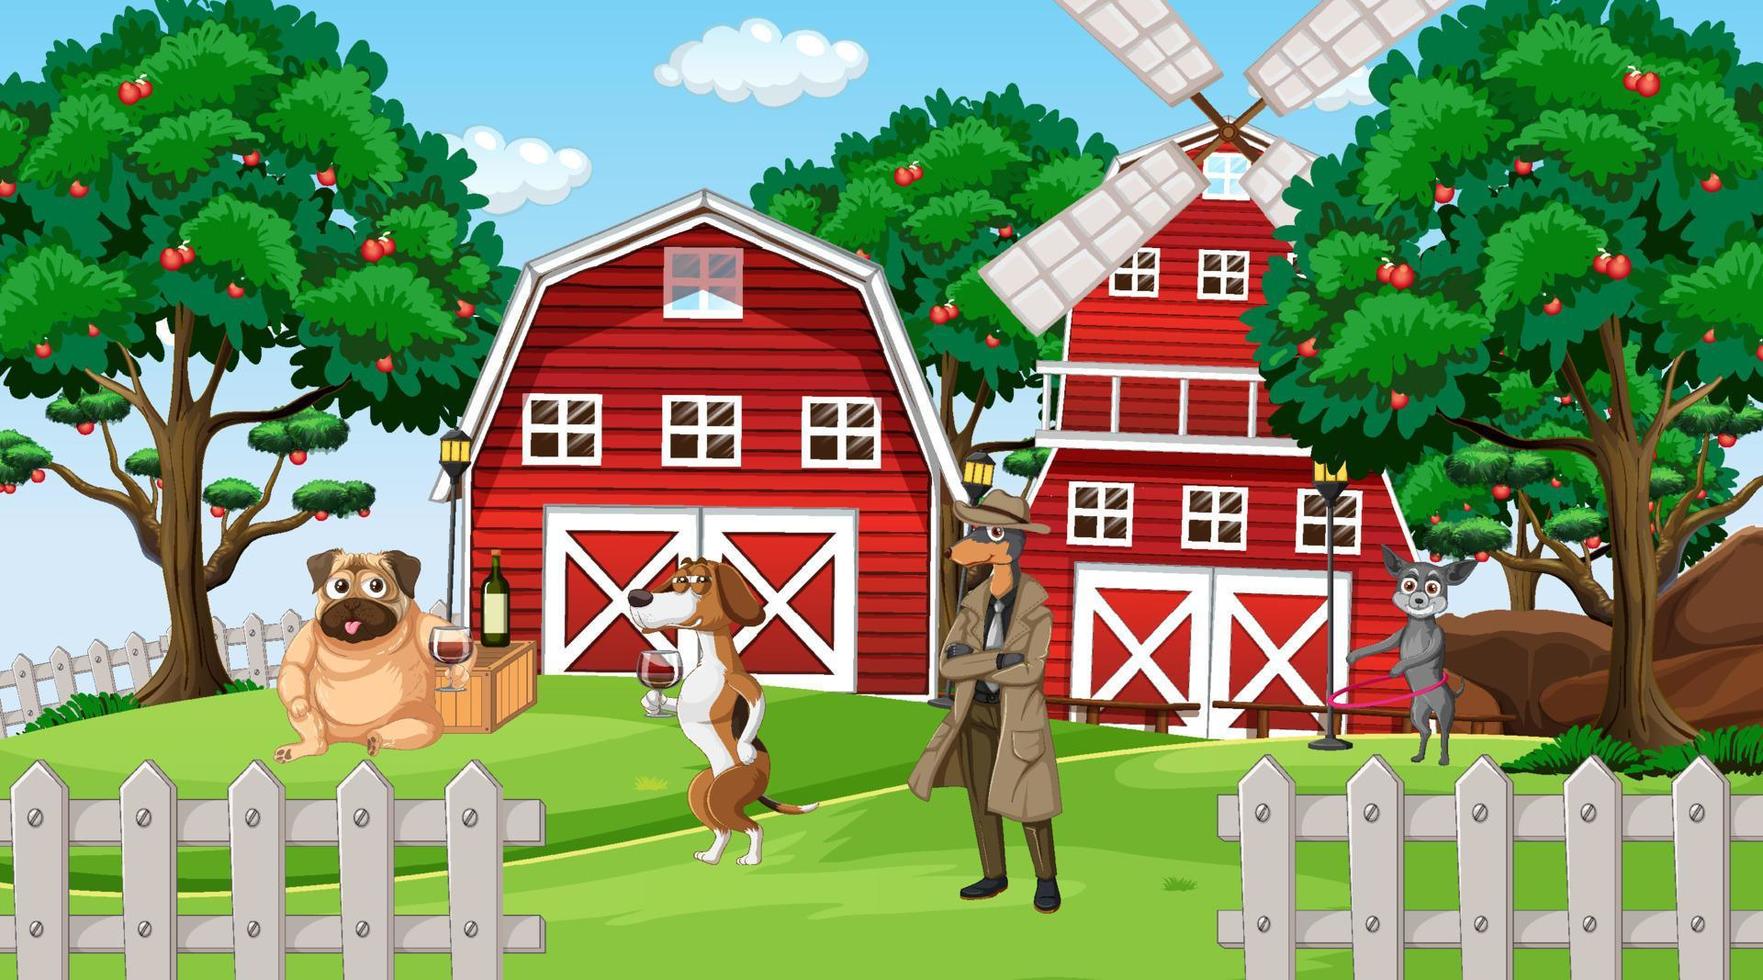 escena de la granja al aire libre con perros de dibujos animados vector